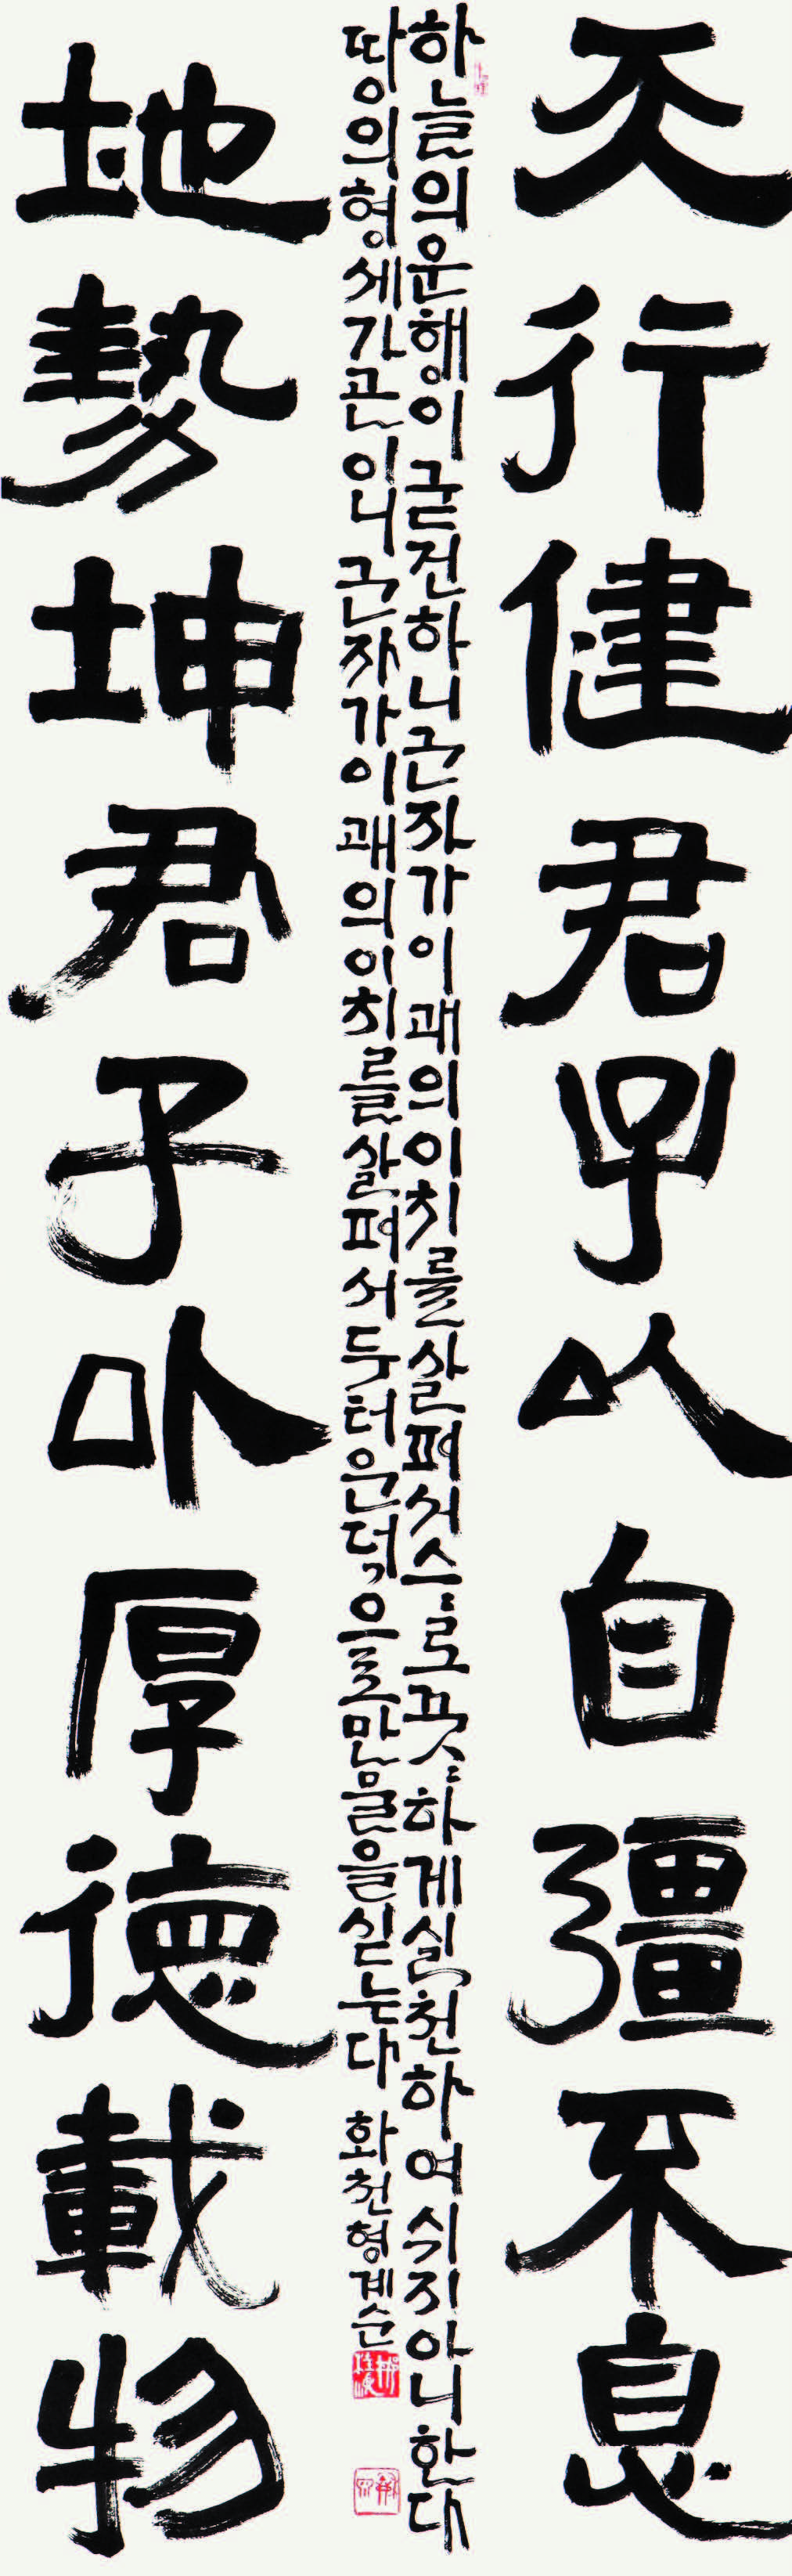 자강불식 후덕재물(주역구) 自彊不息 厚德載物(周易句) Yi jing's phrase